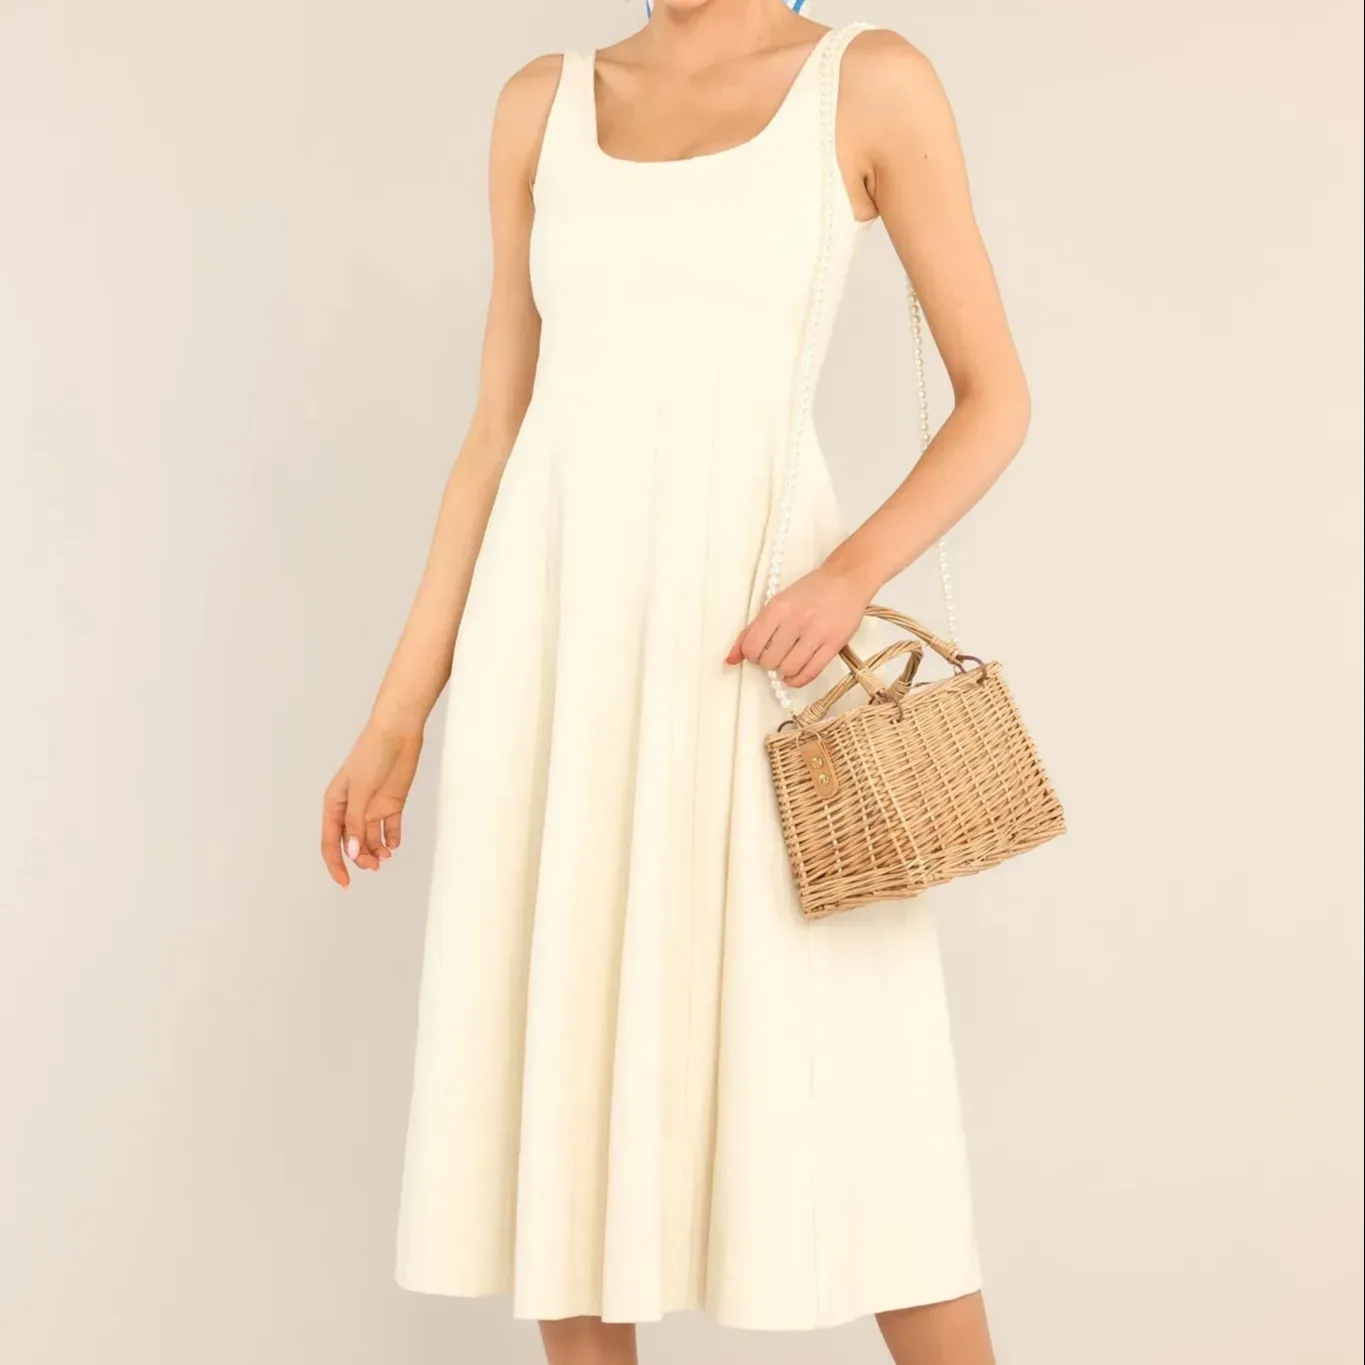 فستان حريمي مكشكش ذو رقبة مربعة وبأكمام متوسطة من المصنع بسعر الجملة فساتين مكشكشة حريمي